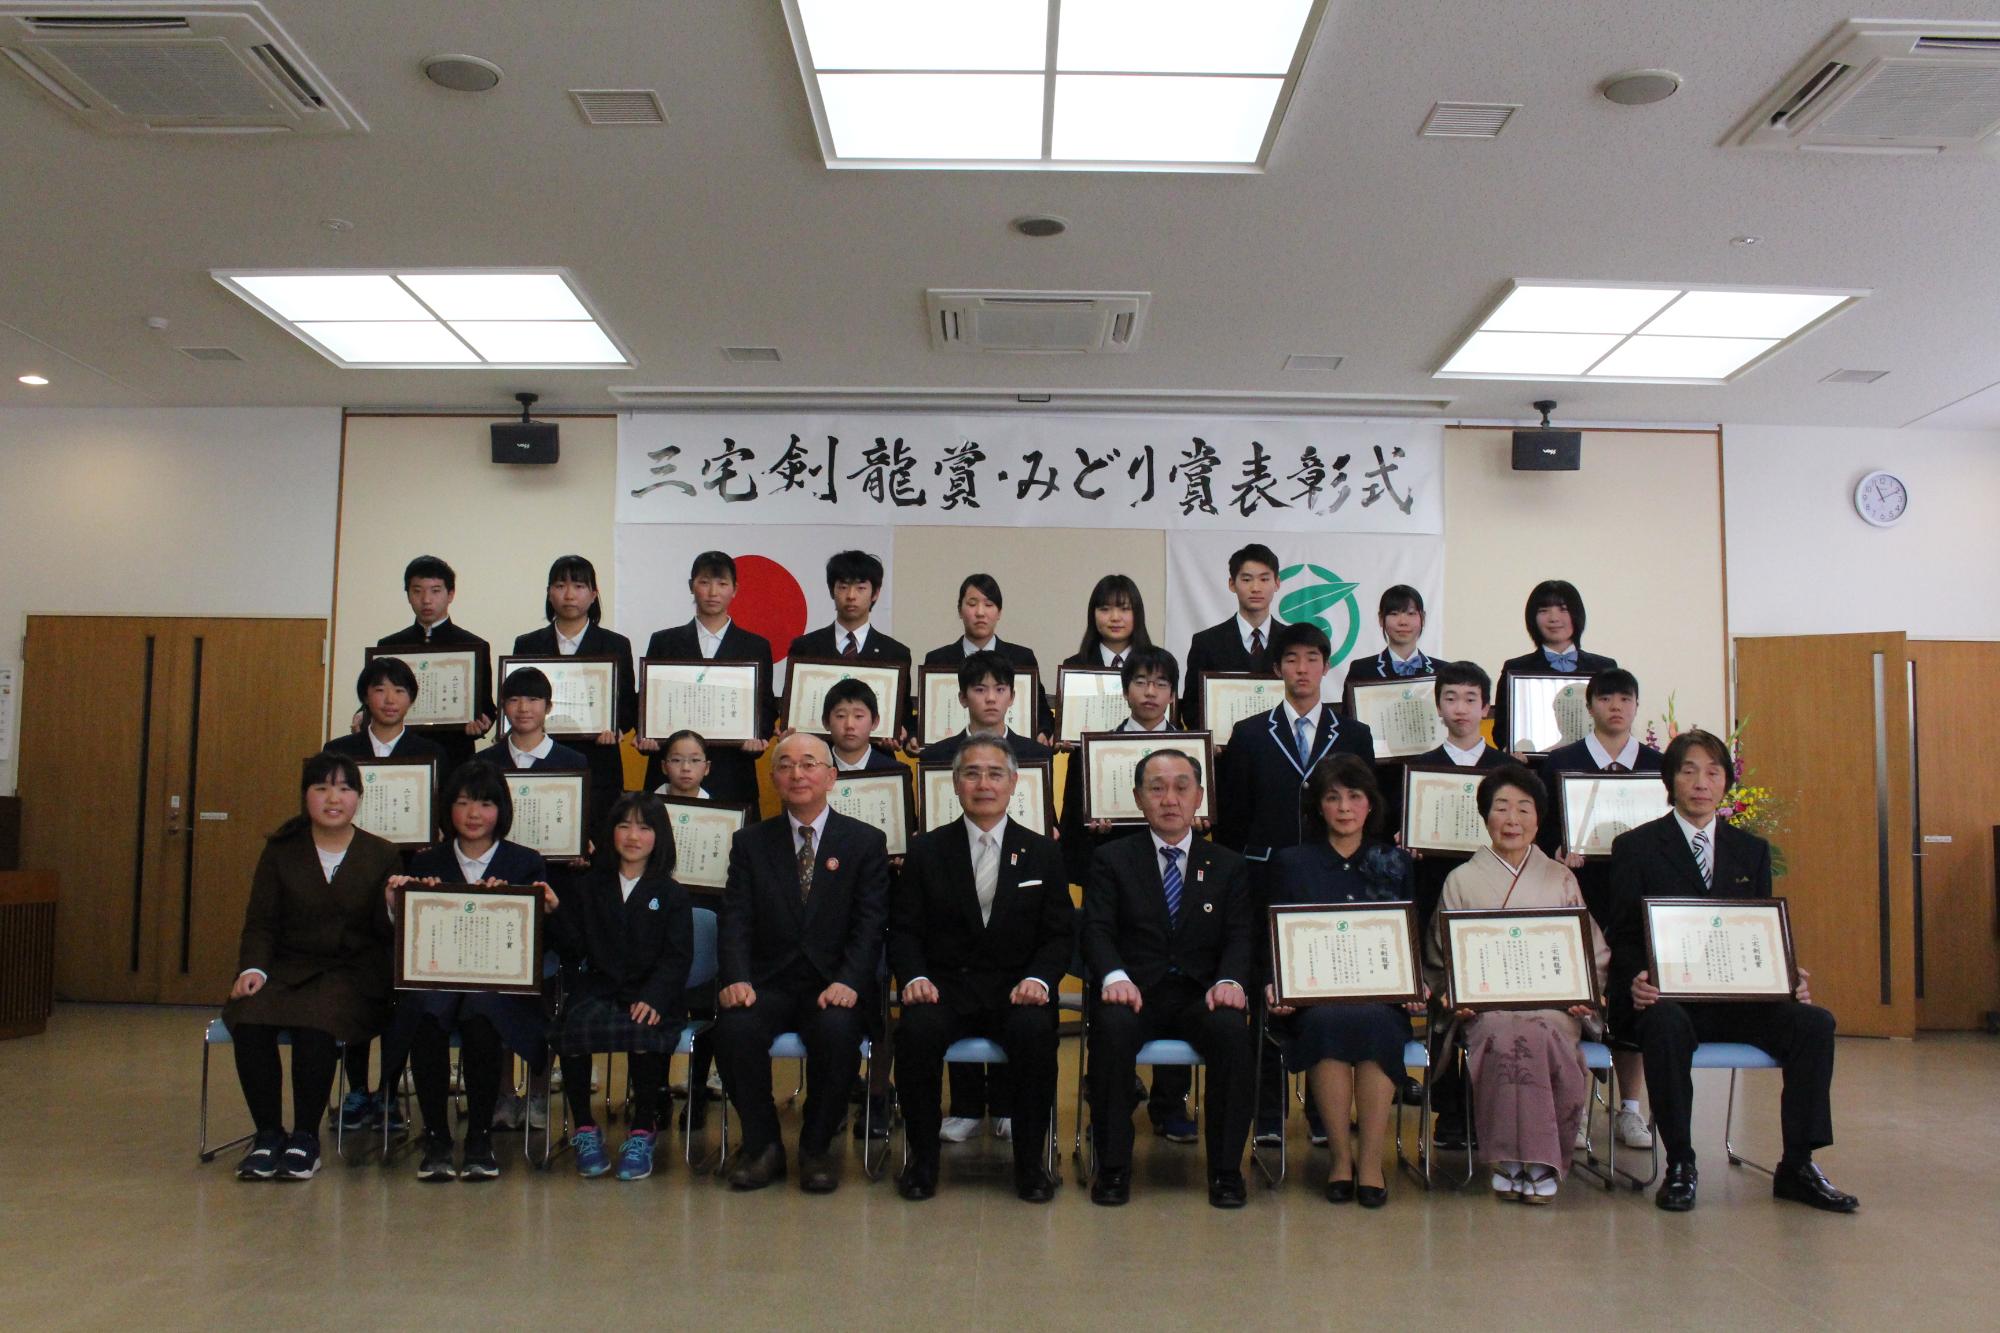 横に3列になって、前川教育長・酒井市長・森本議長が前列の真ん中に座り、受賞者の皆さんは表彰状を持たれて写っている記念写真